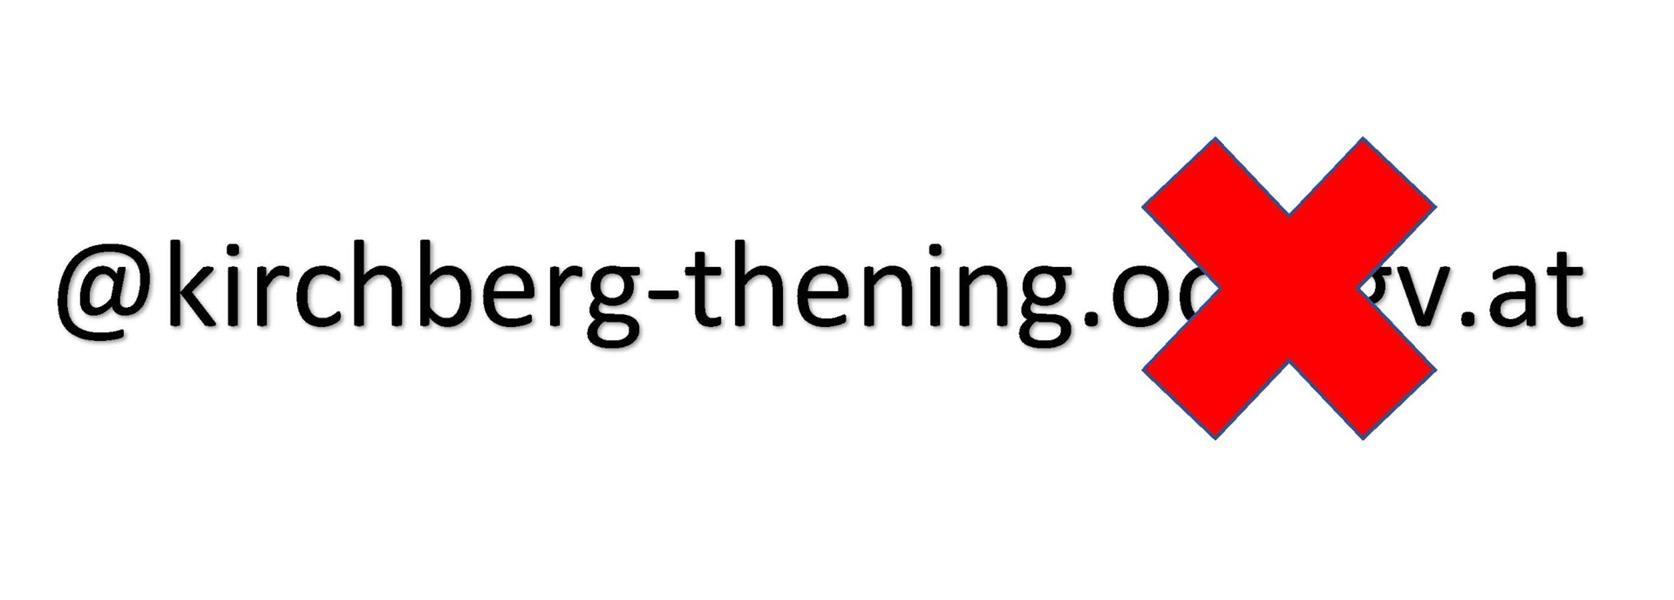 kirchberg-thening